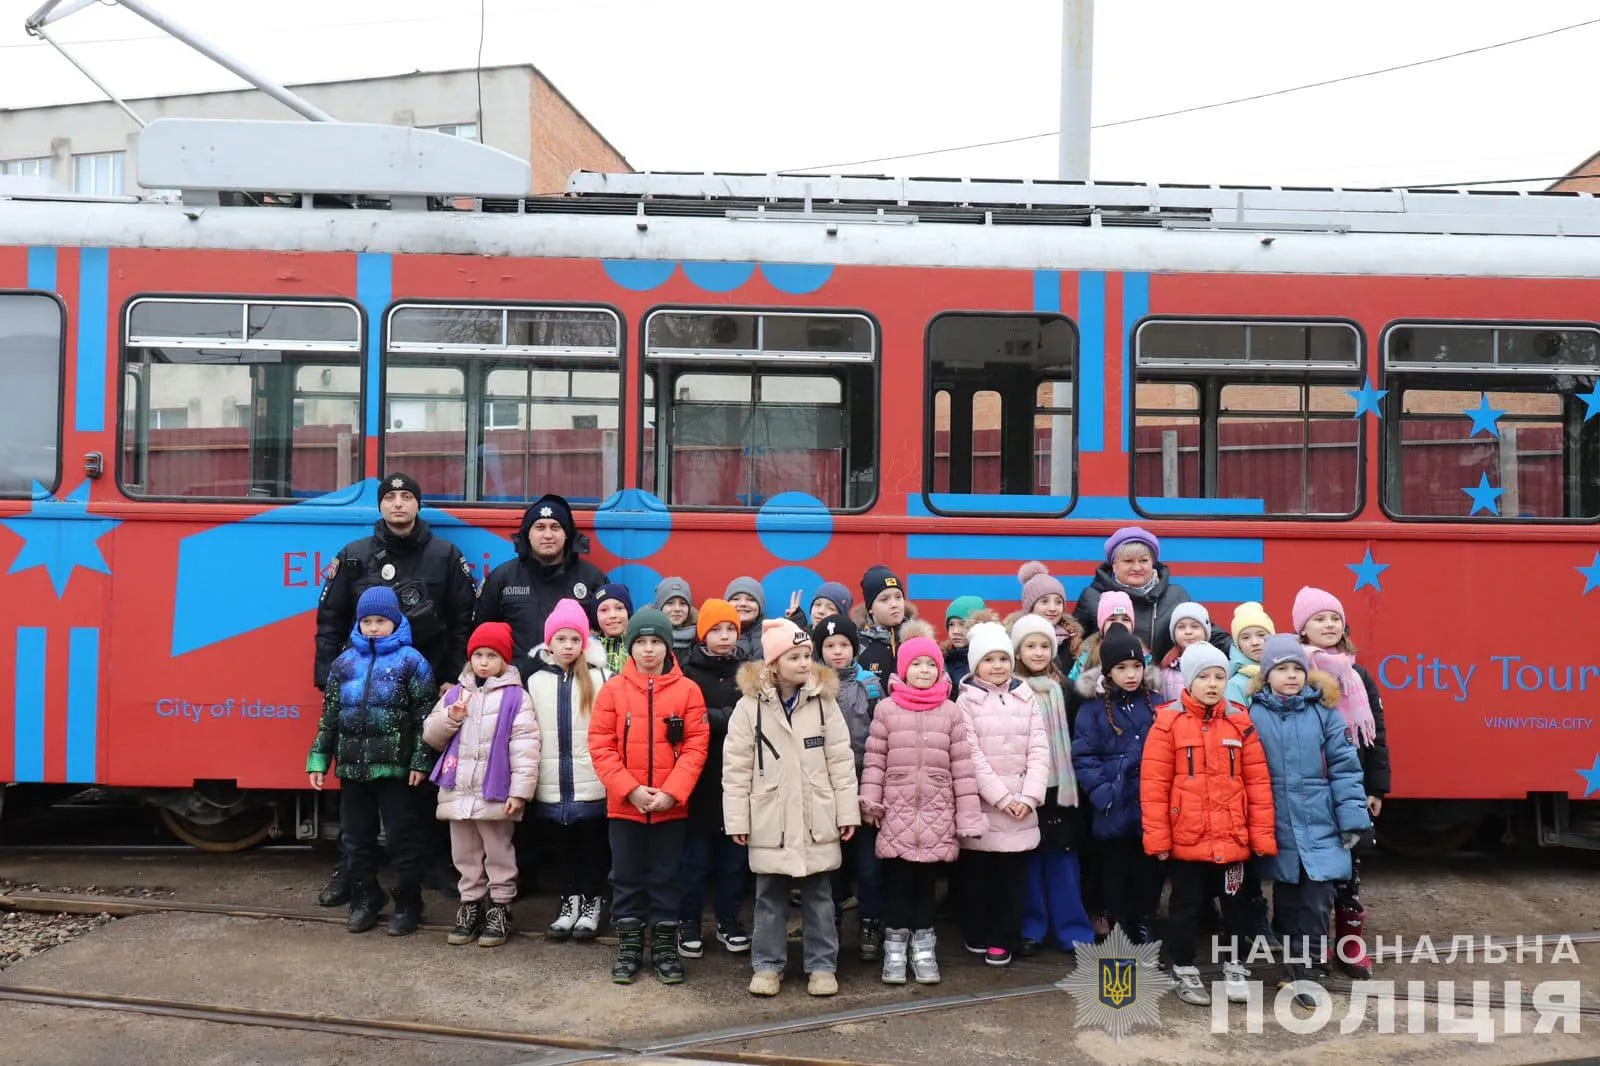 Поліцейські офіцери вінницької громади організували екскурсію для школярів до трамвайного депо